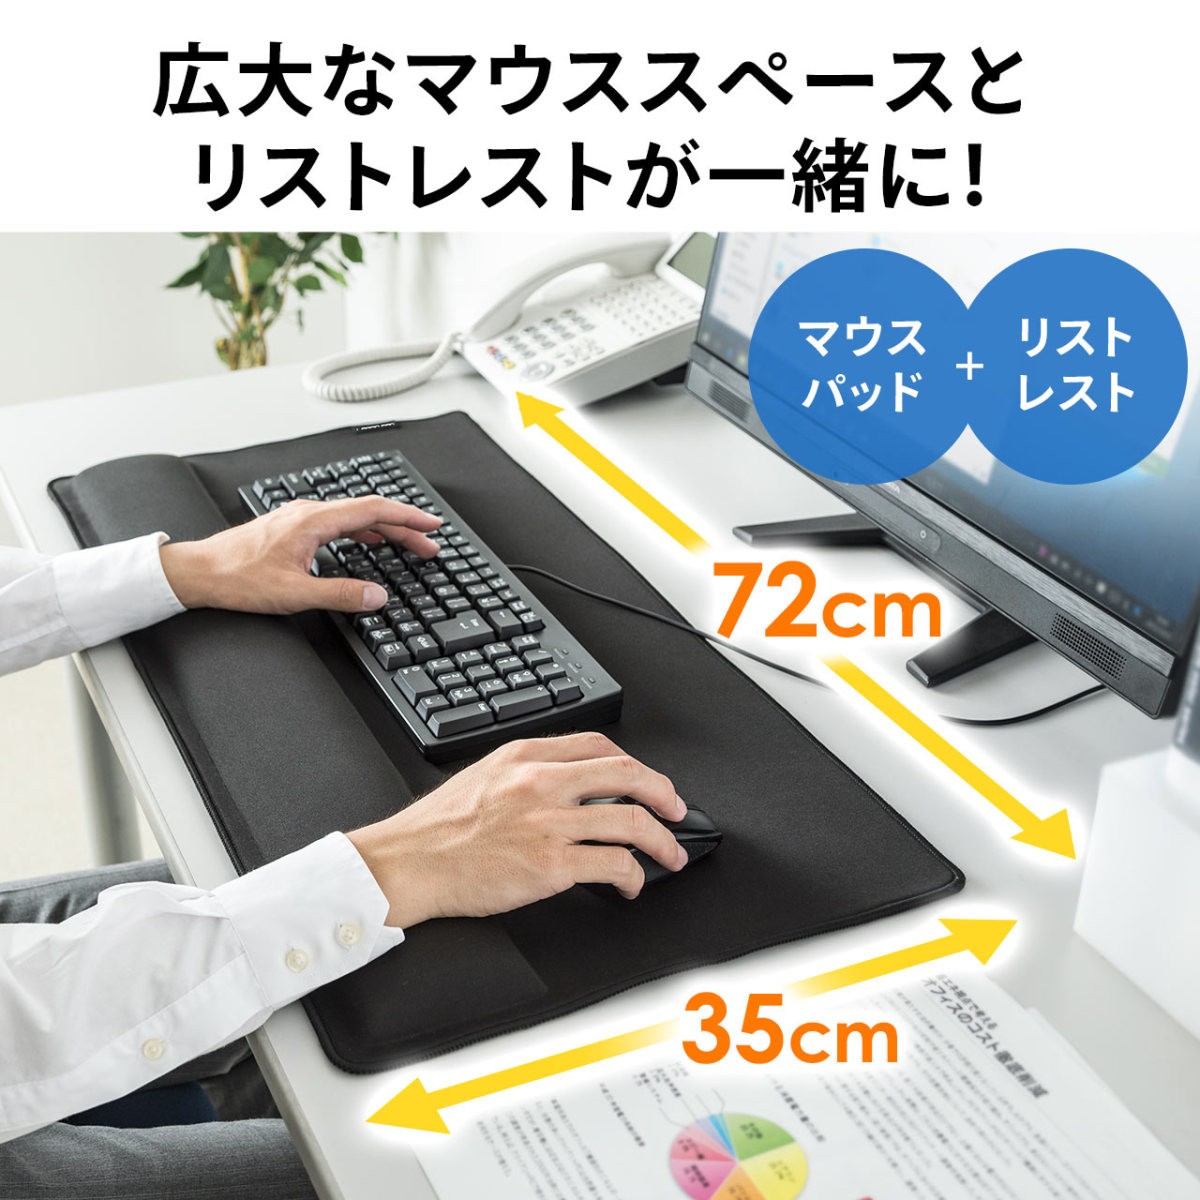 マウスパッド 超大型 リストレスト付き デスクパッド デスクマット パームレスト ゲーミング キーボード マウス用 手首・肘・疲労軽減 200-MPD022